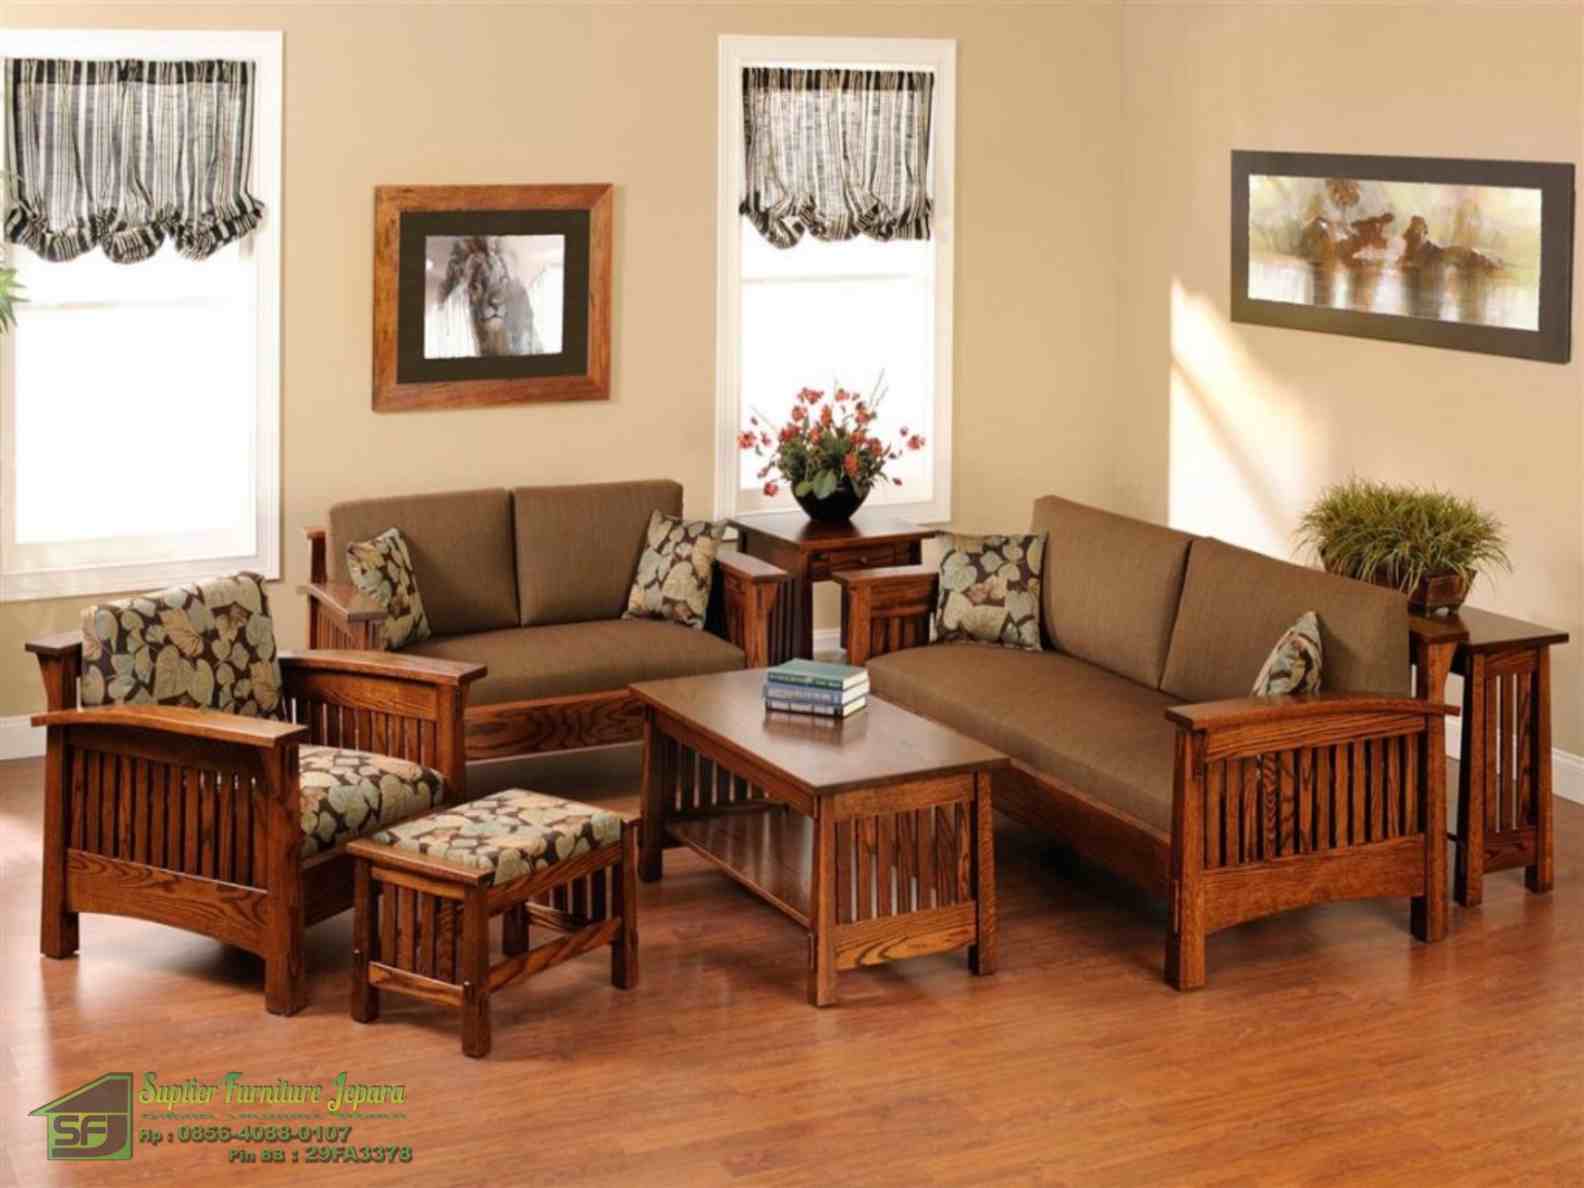 Desain Interior Ruang Tamu Minimalis Tanpa Sofa